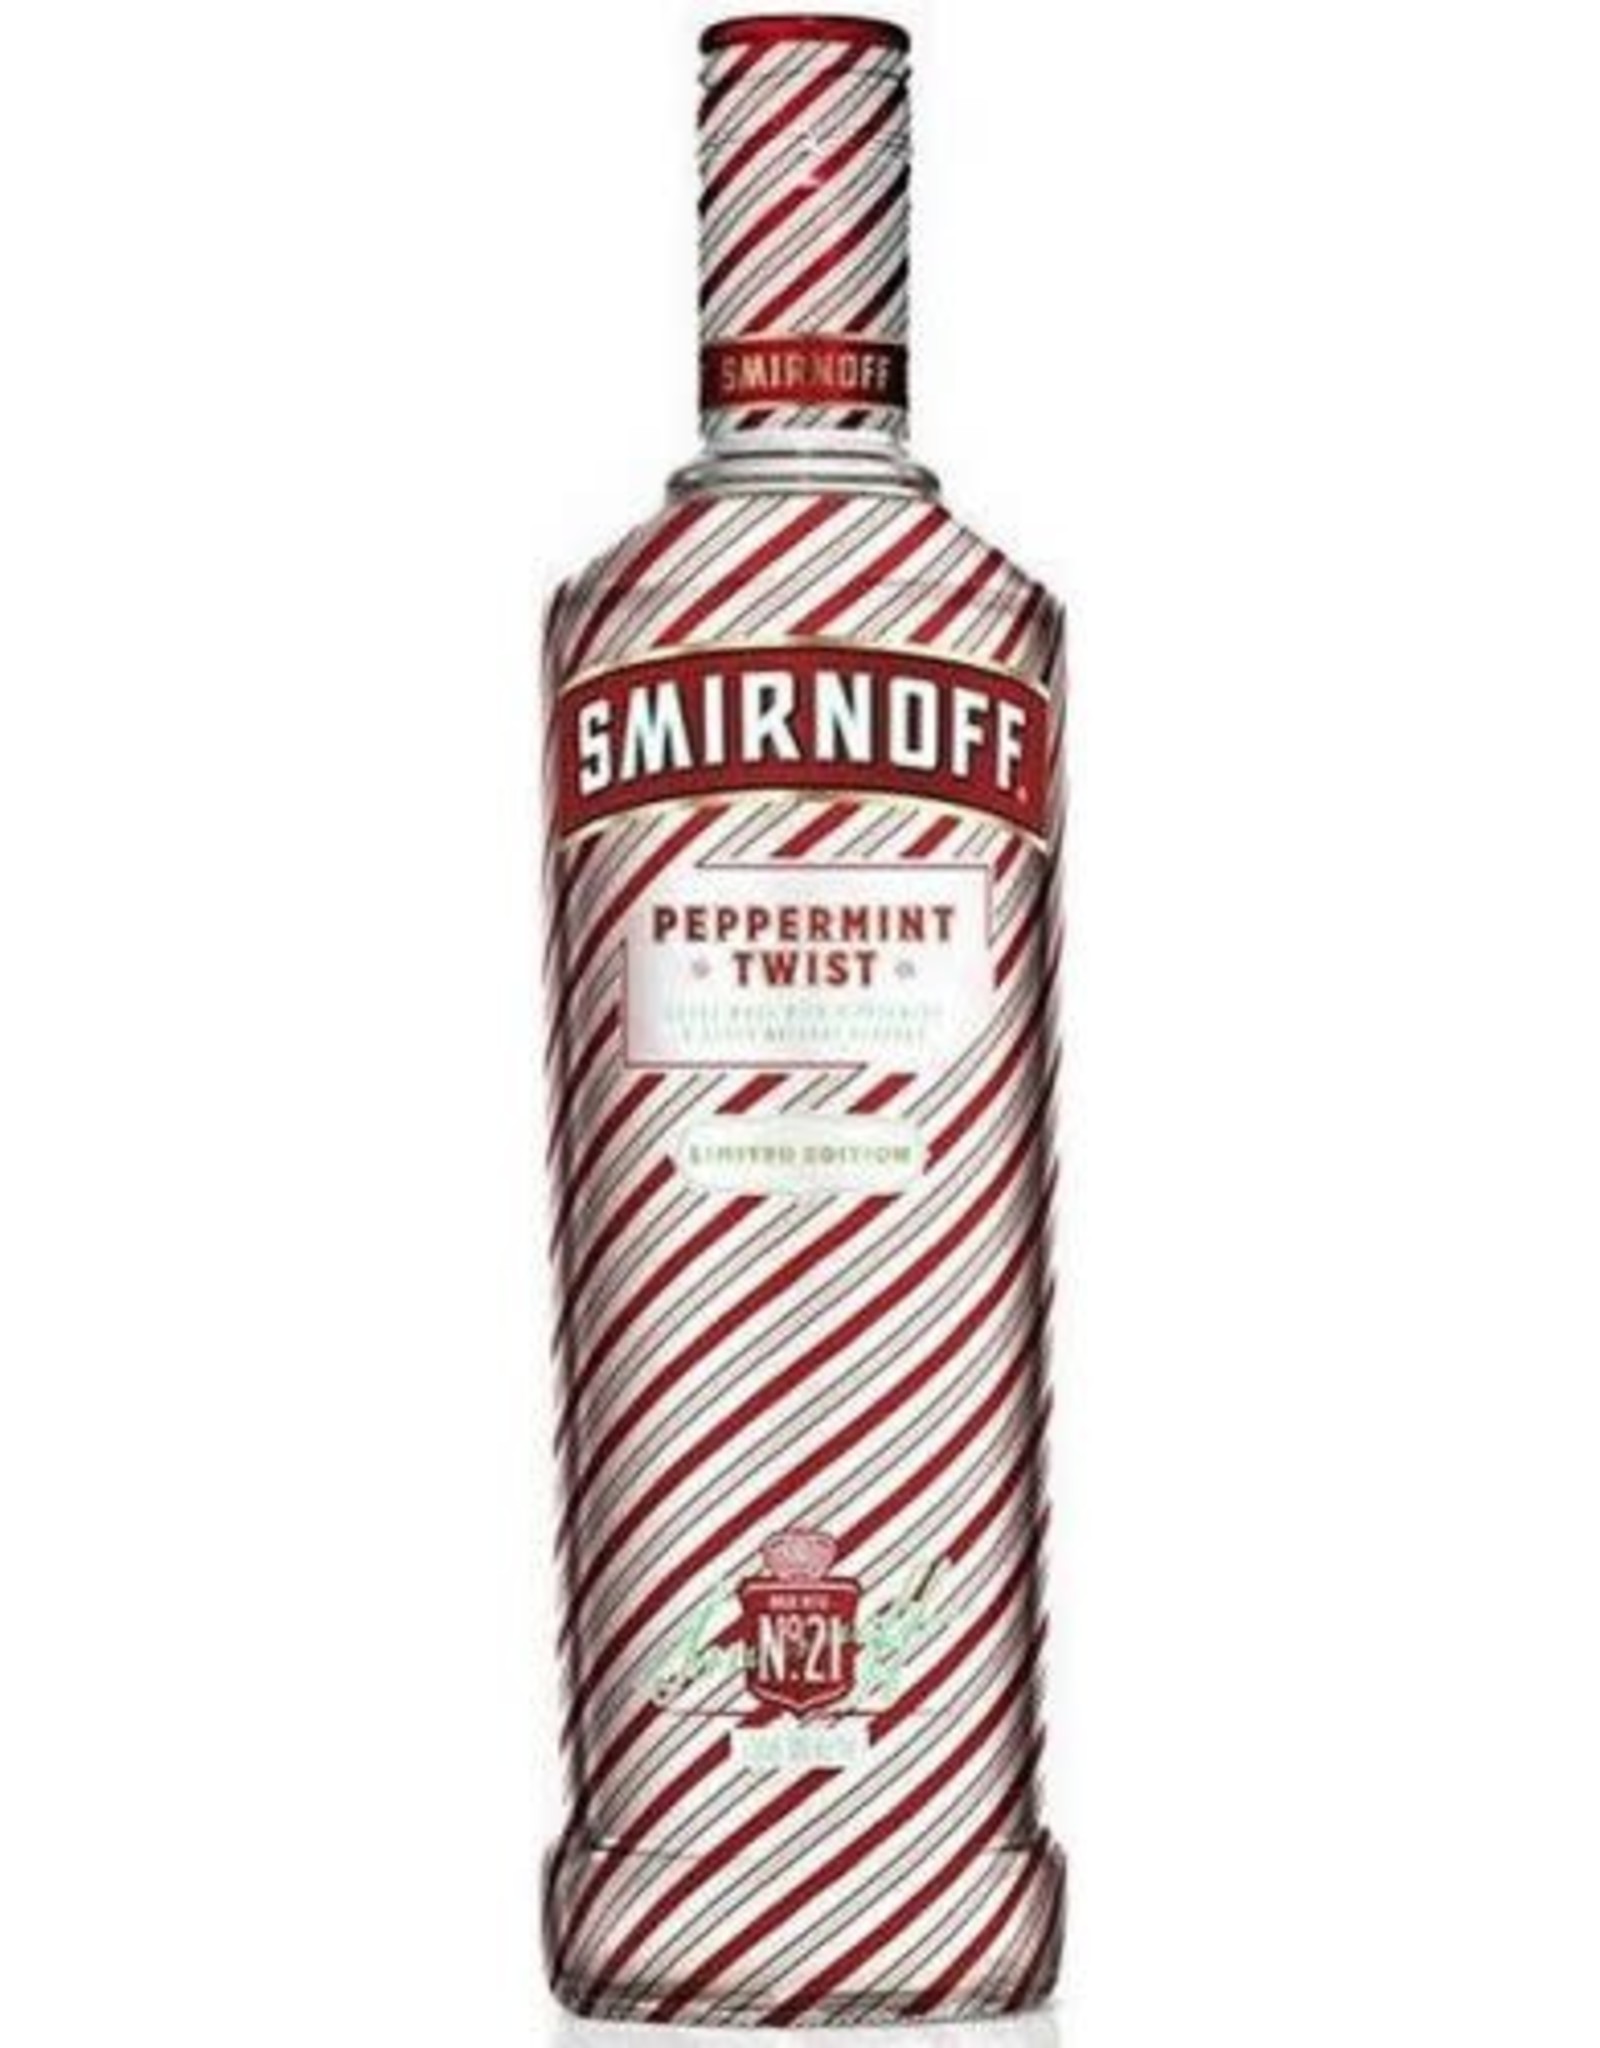 Smirnoff Smirnoff Peppermint Twist Vodka